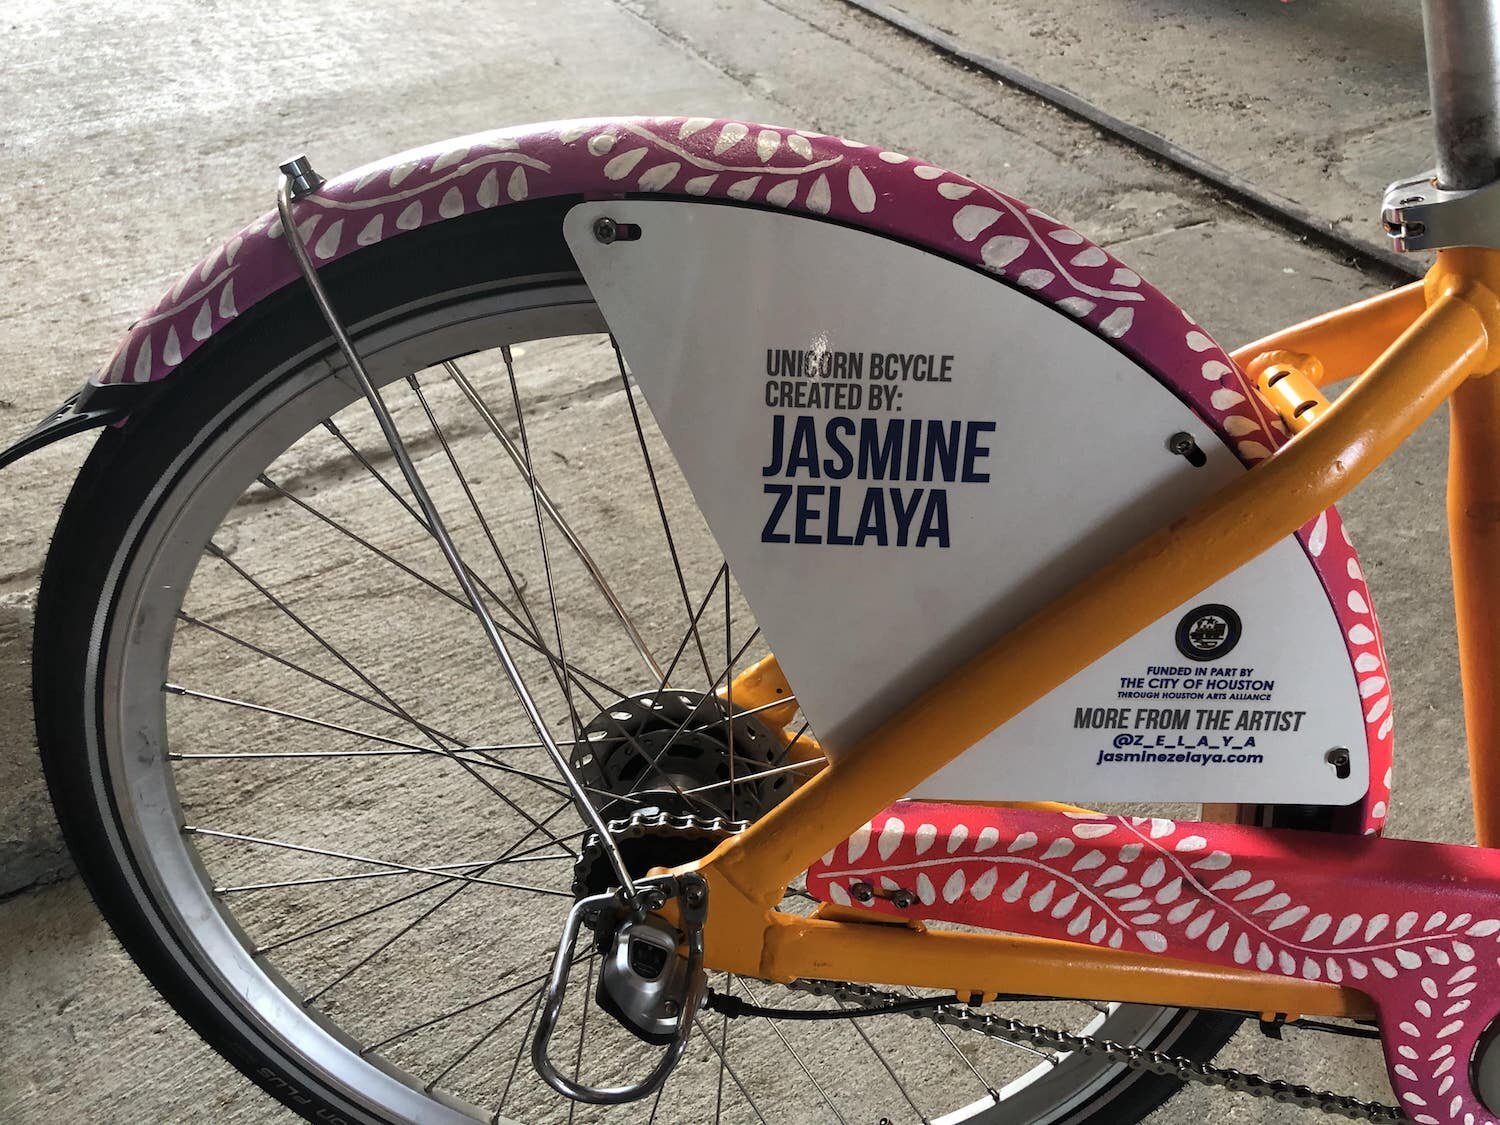 Jasmine-Zelaya-BCycle-Painted-Bike-1-min.jpg